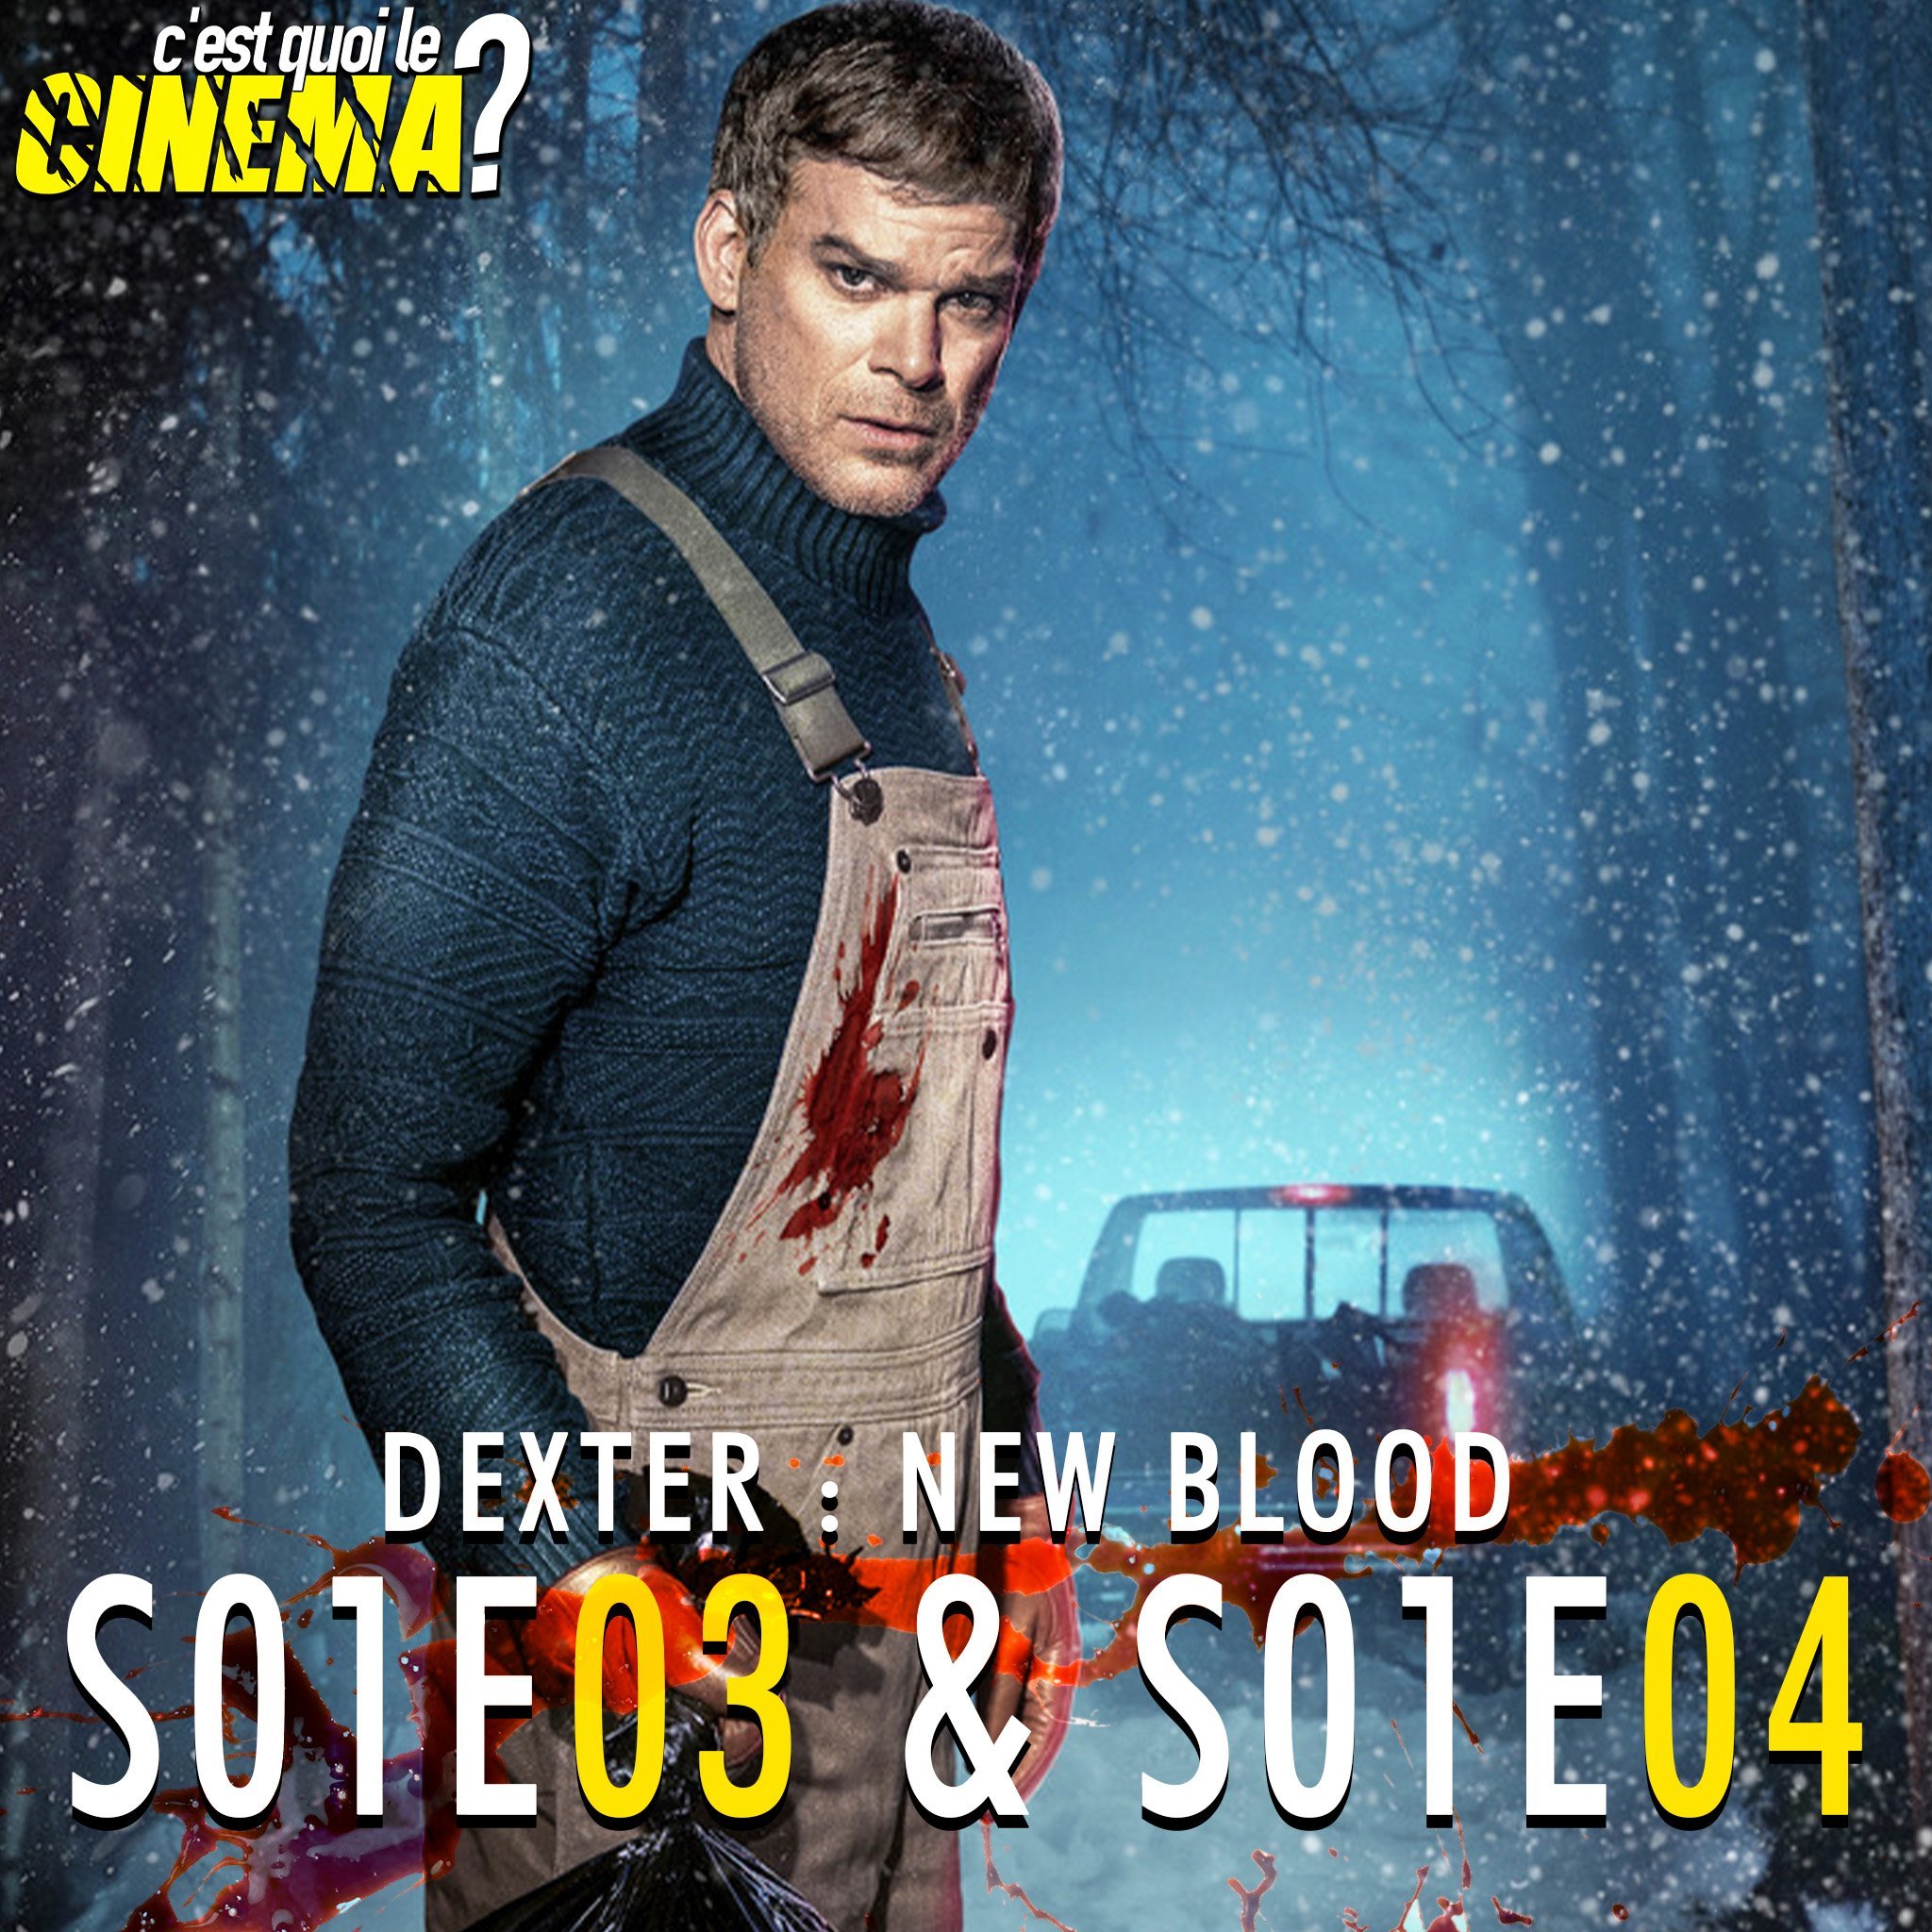 [CRITIQUE] Dexter : New Blood – S1E03 & S1E04 – Meurtre(s) en suspens